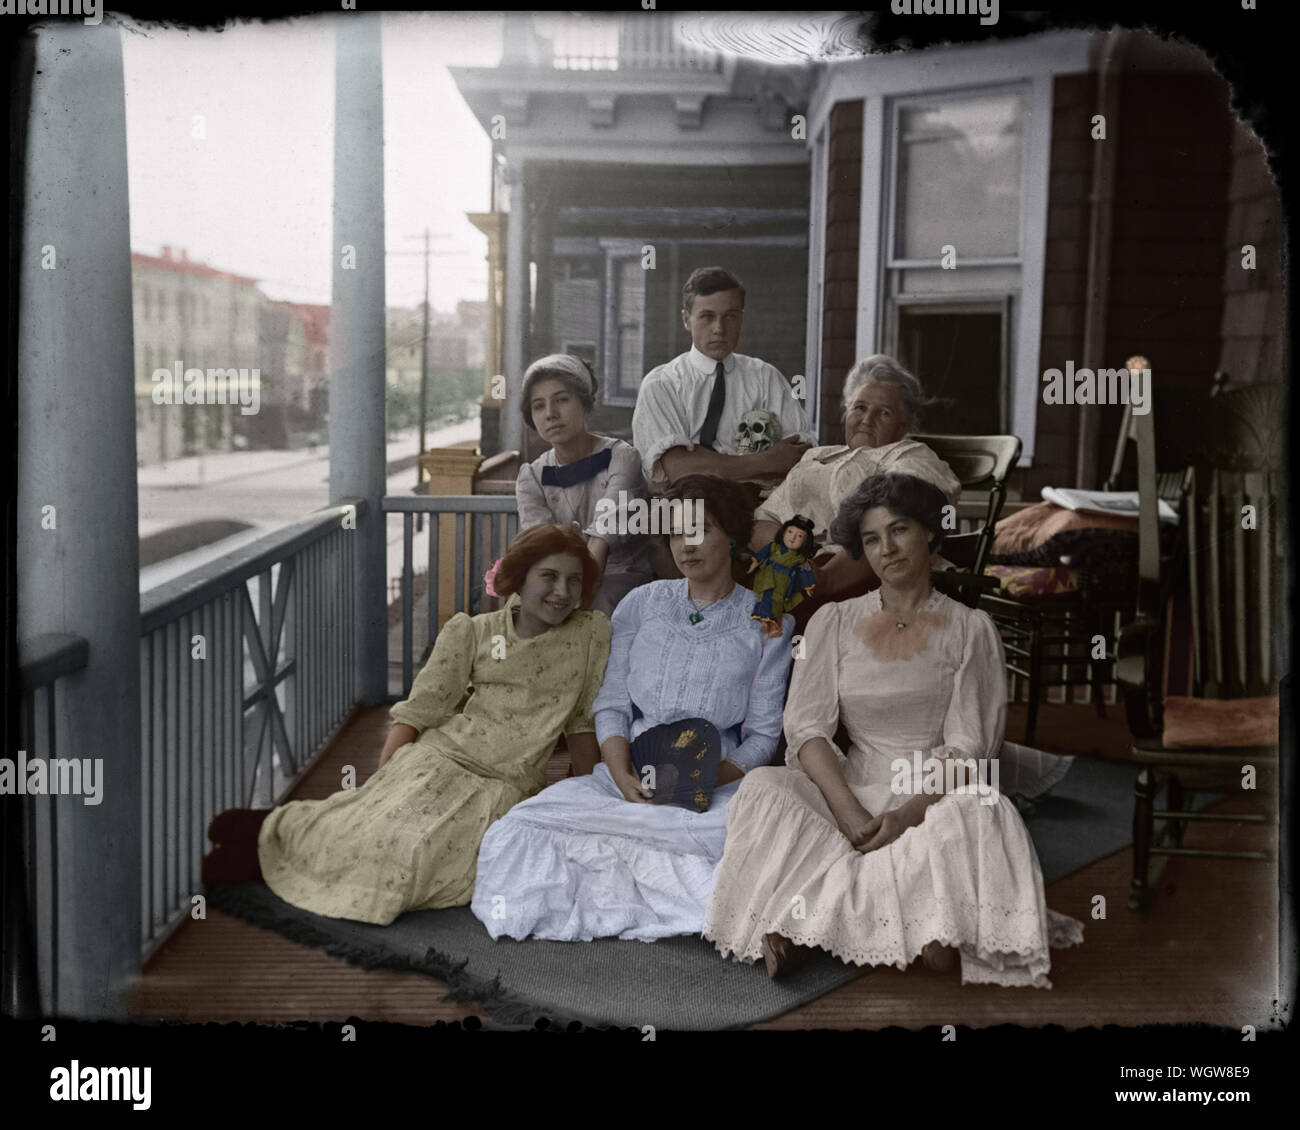 Family Portrait im Sommer Stadt Einstellung: eine Gruppe von Frauen und jungen Menschen, wahrscheinlich Student der Medizin, auf einem Balkon in einer Stadt nach Hause. Im Osten der USA, Anfang 1900. Stockfoto